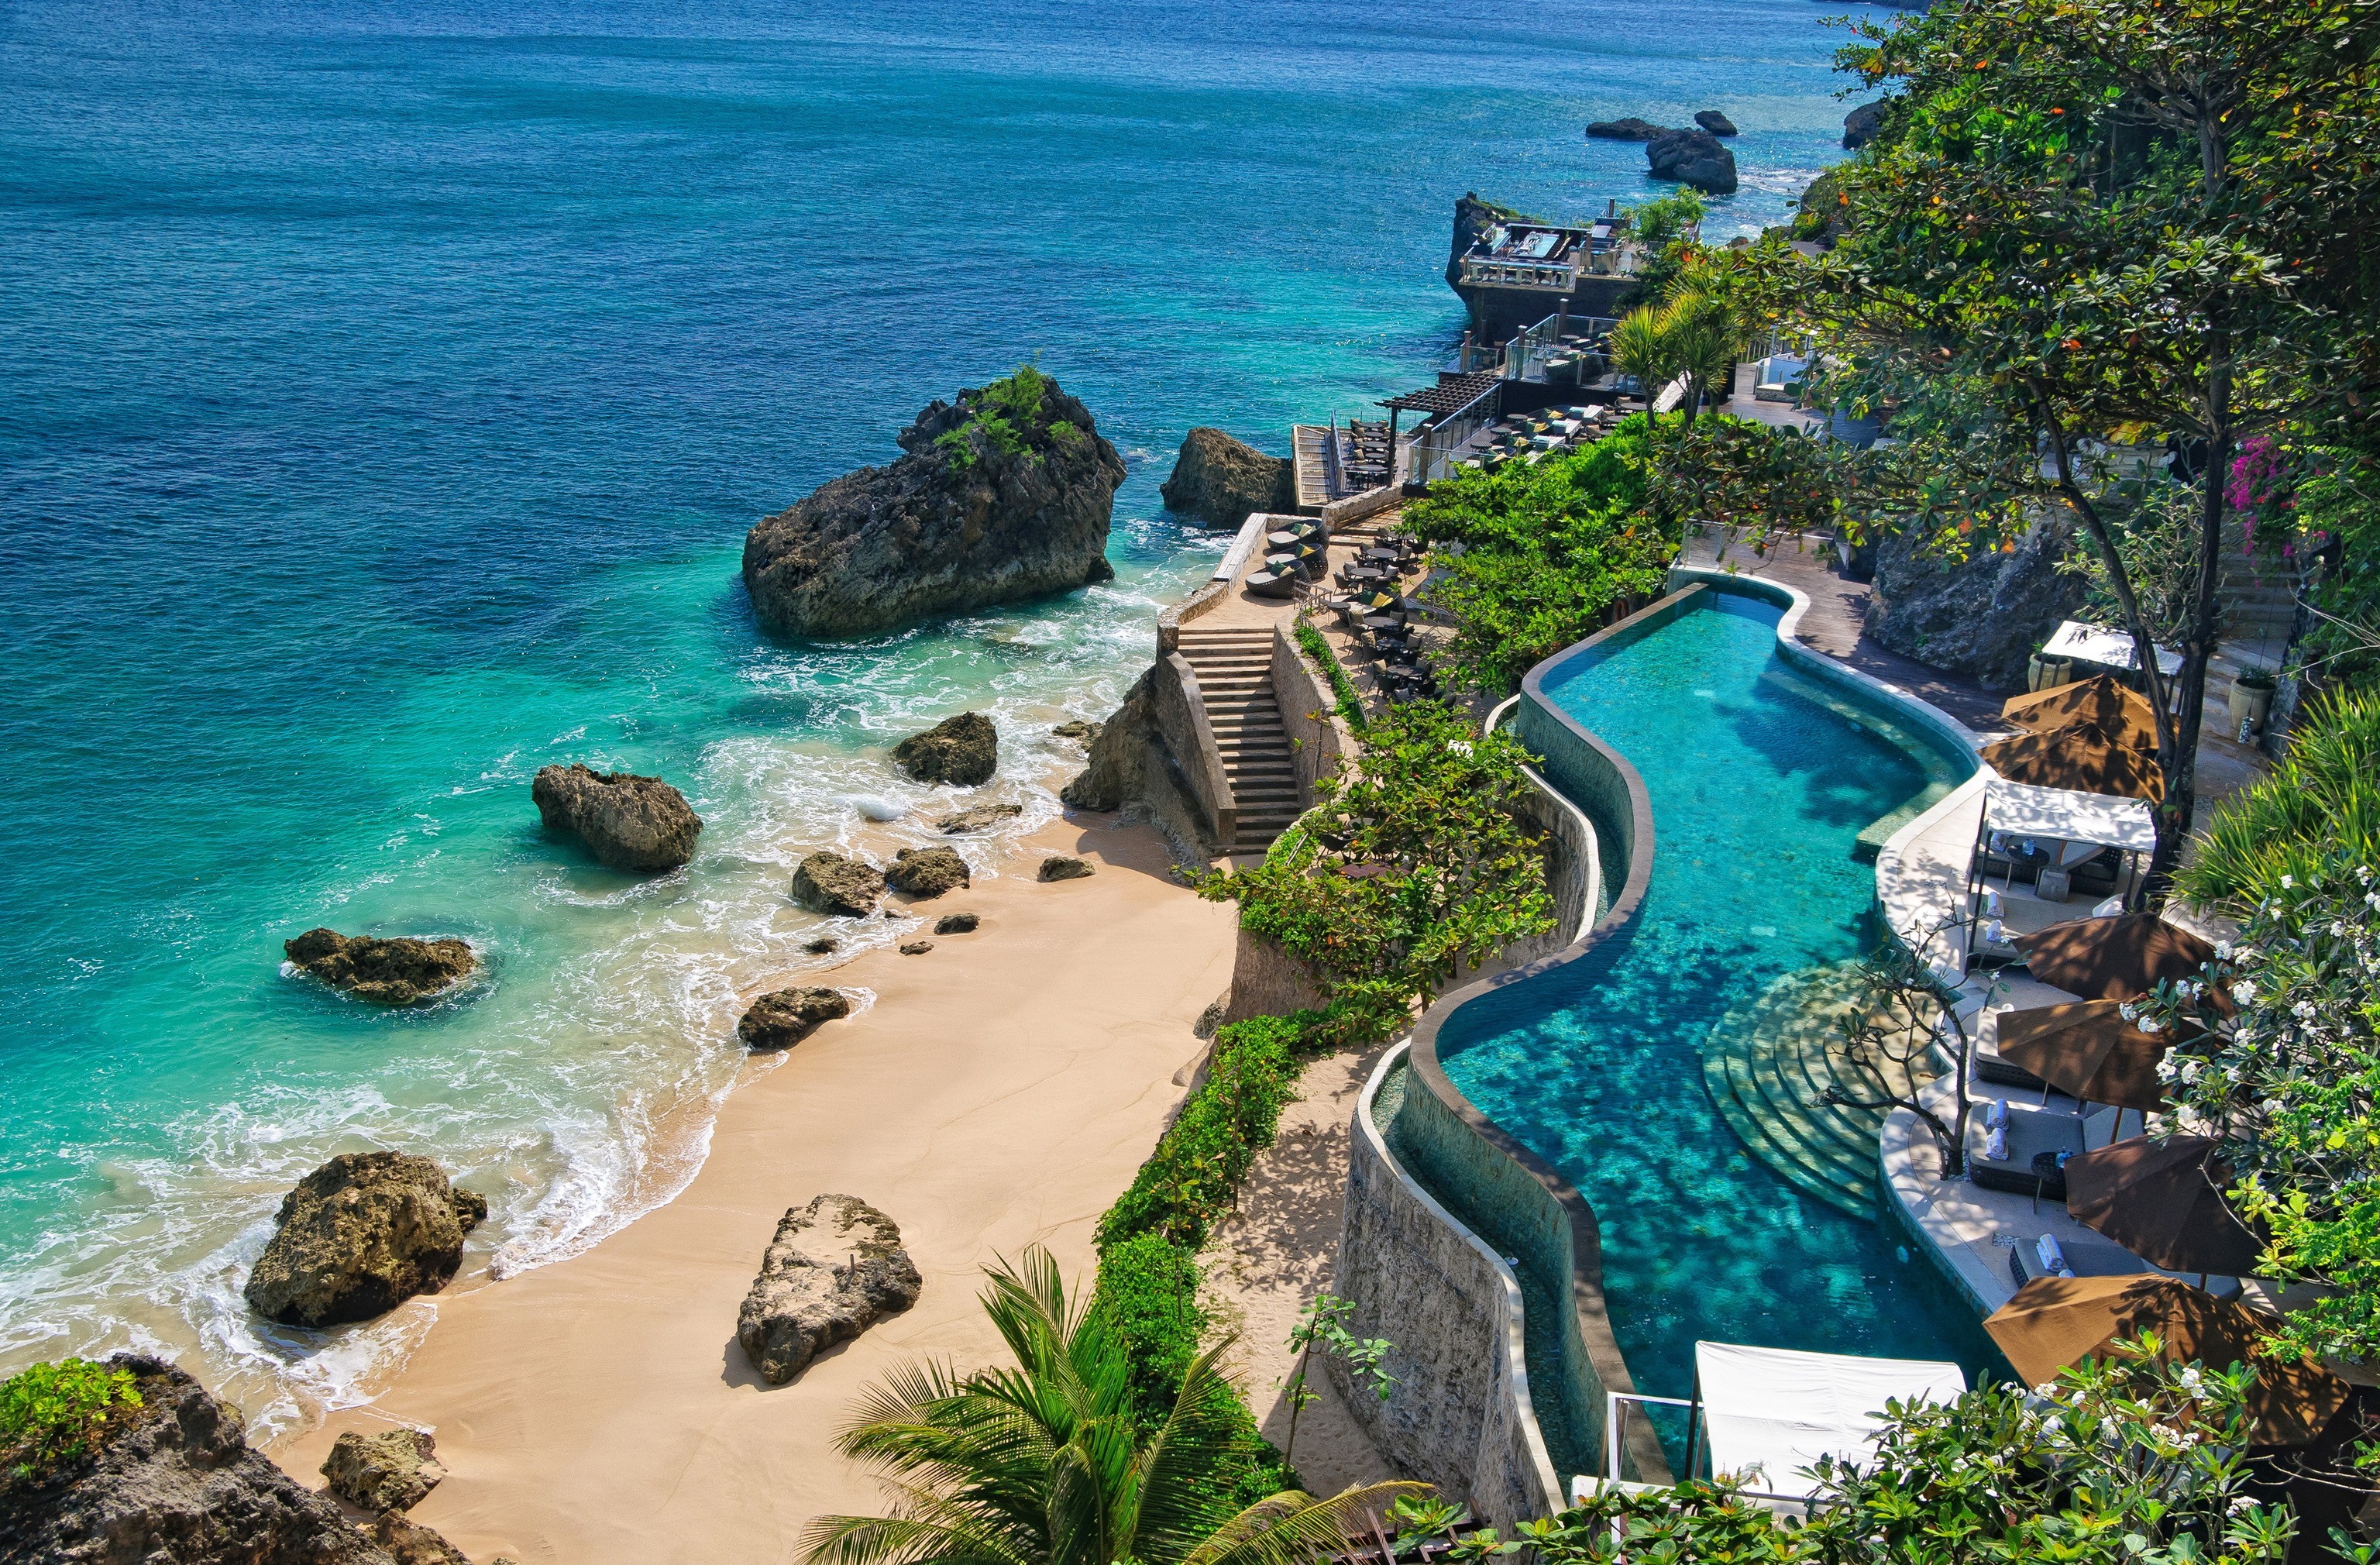 bali, indonesia, resort, beach, tropical, man made, ocean, pool